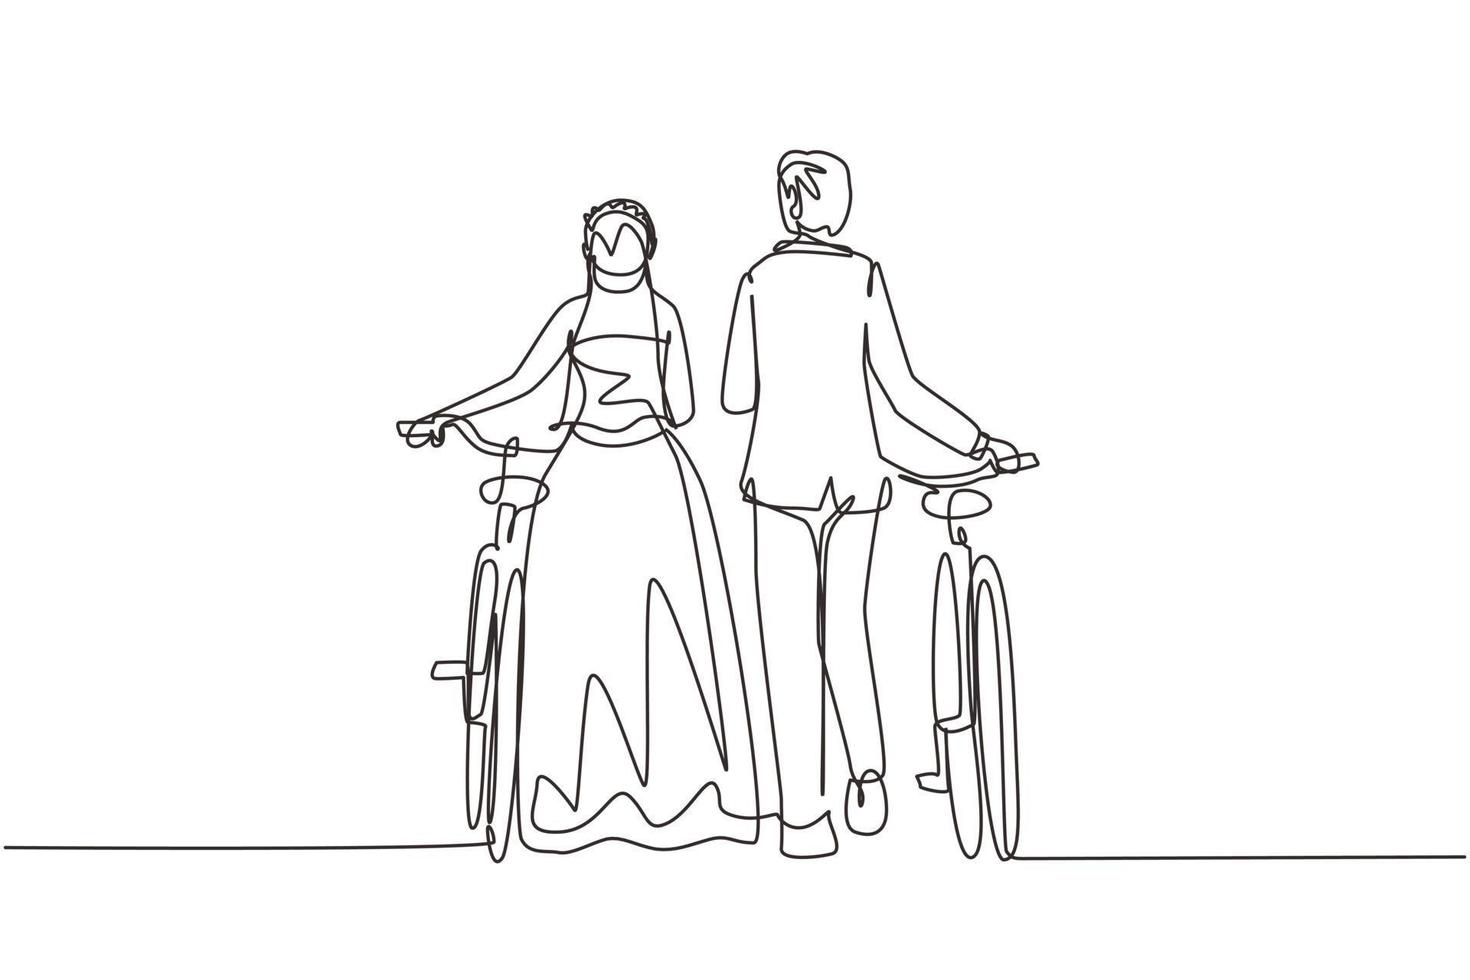 disegno a linea continua singola vista posteriore uomo e donna che indossano un abito da sposa che camminano insieme alla bicicletta. ragazzo e ragazza innamorati. felice coppia sposata romantica. vettore di disegno grafico a una linea